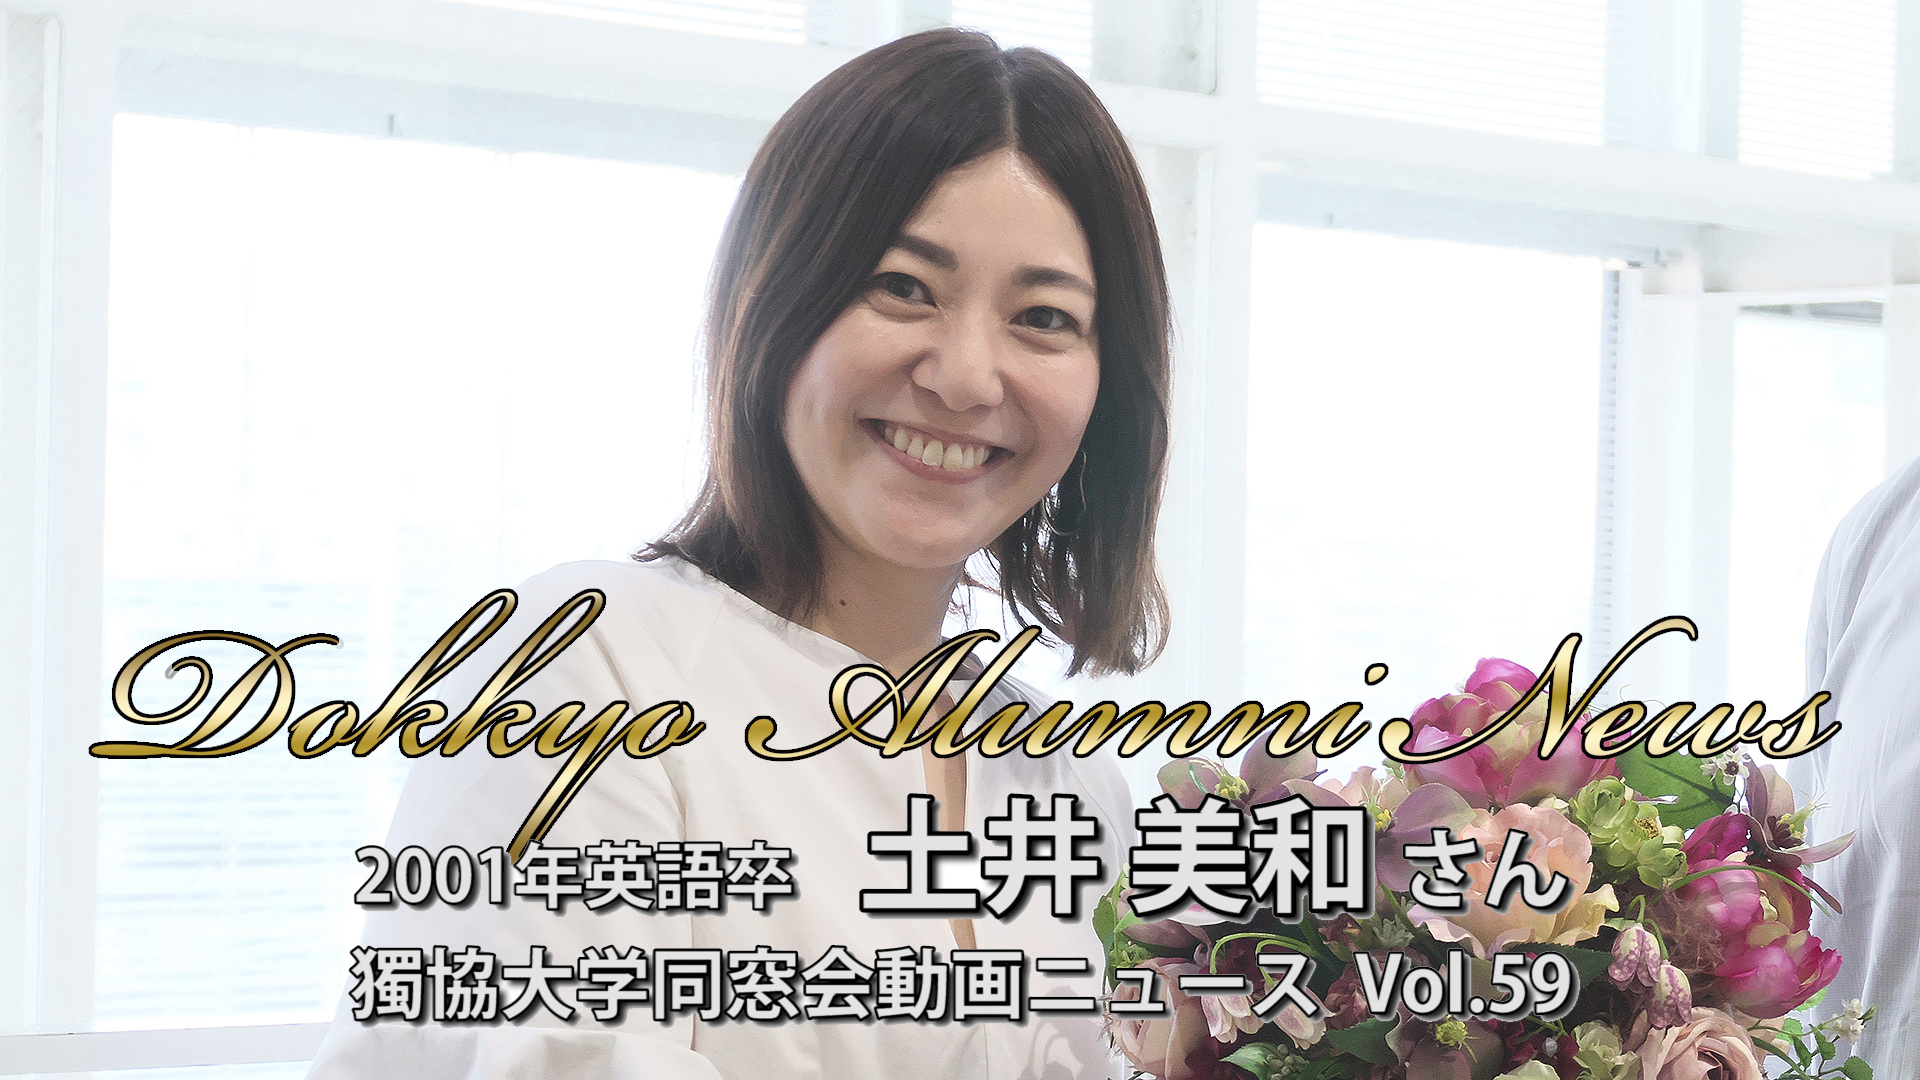 “独立してよかったね”と言われるように―土井美和さん Dokkyo Alumni News Vol.59